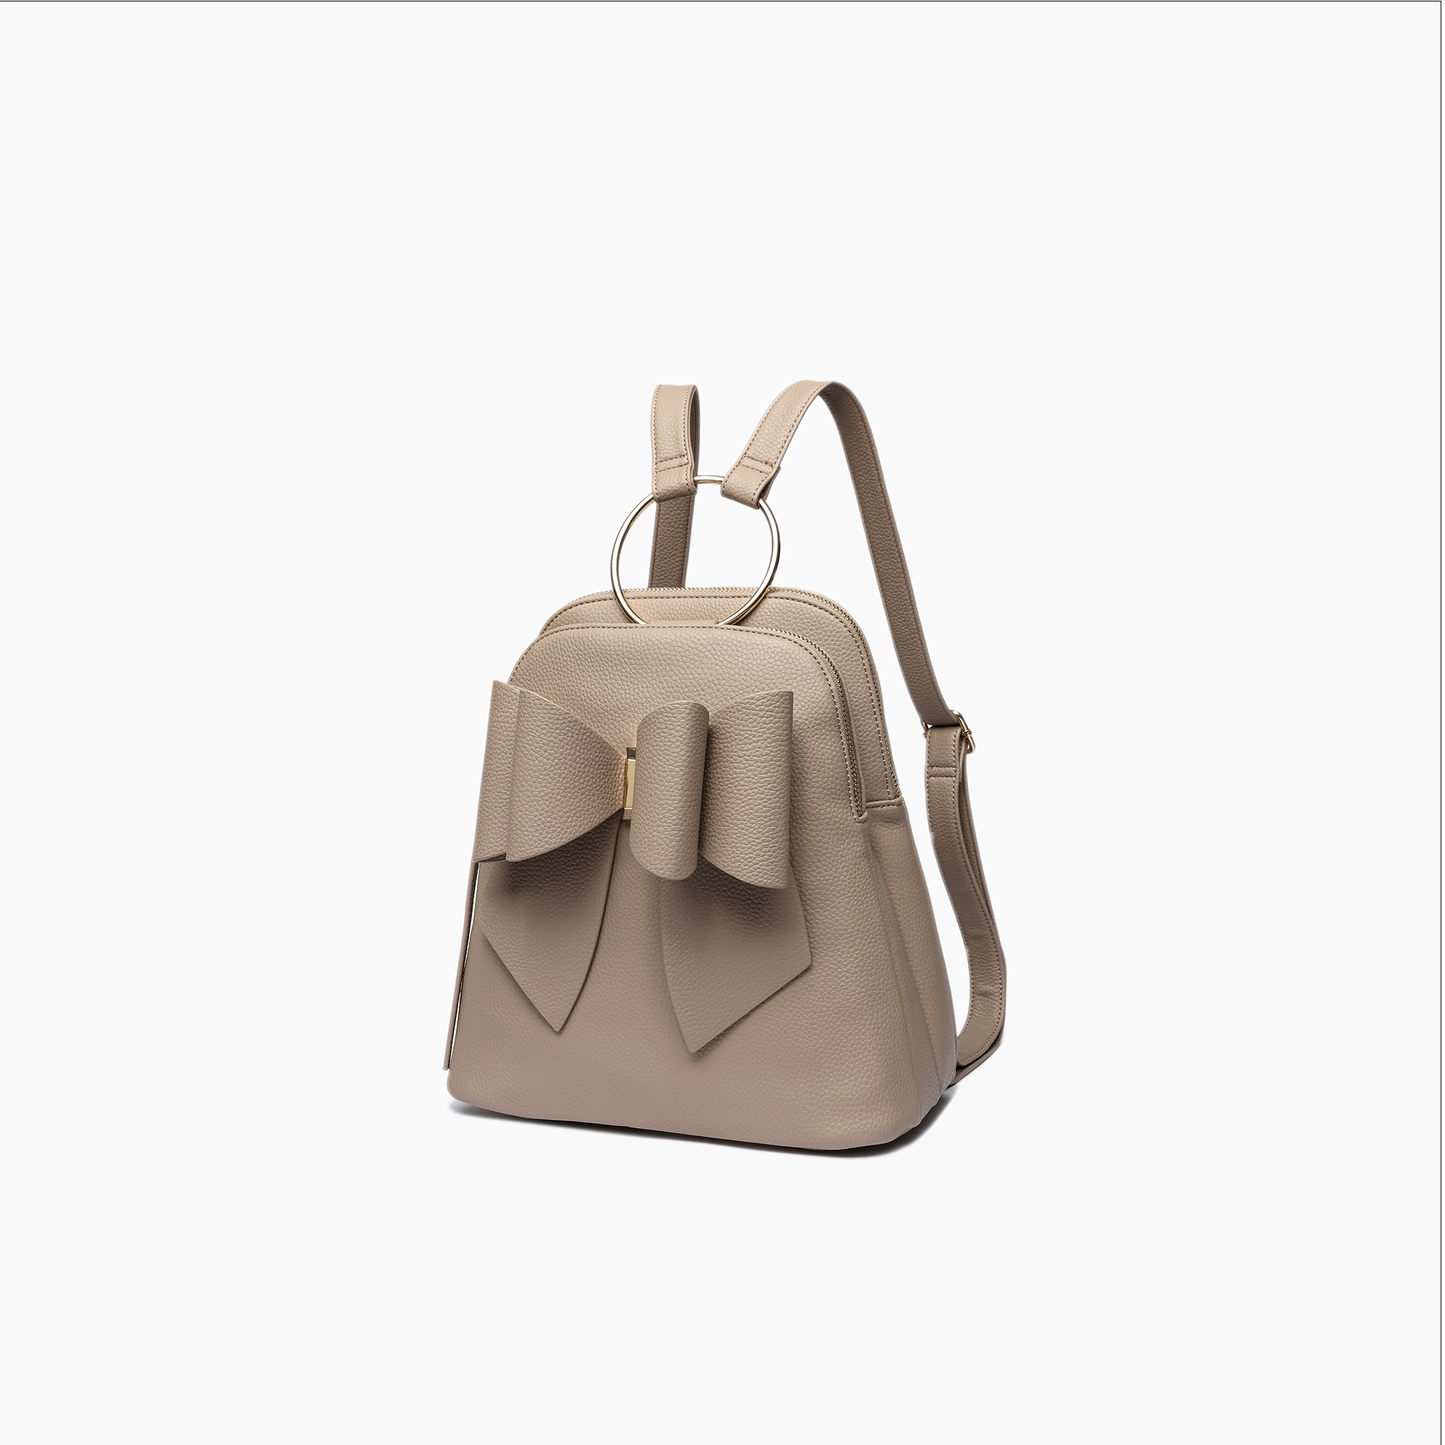 Jasmine Bowtie Backpack Handbag: Taupe